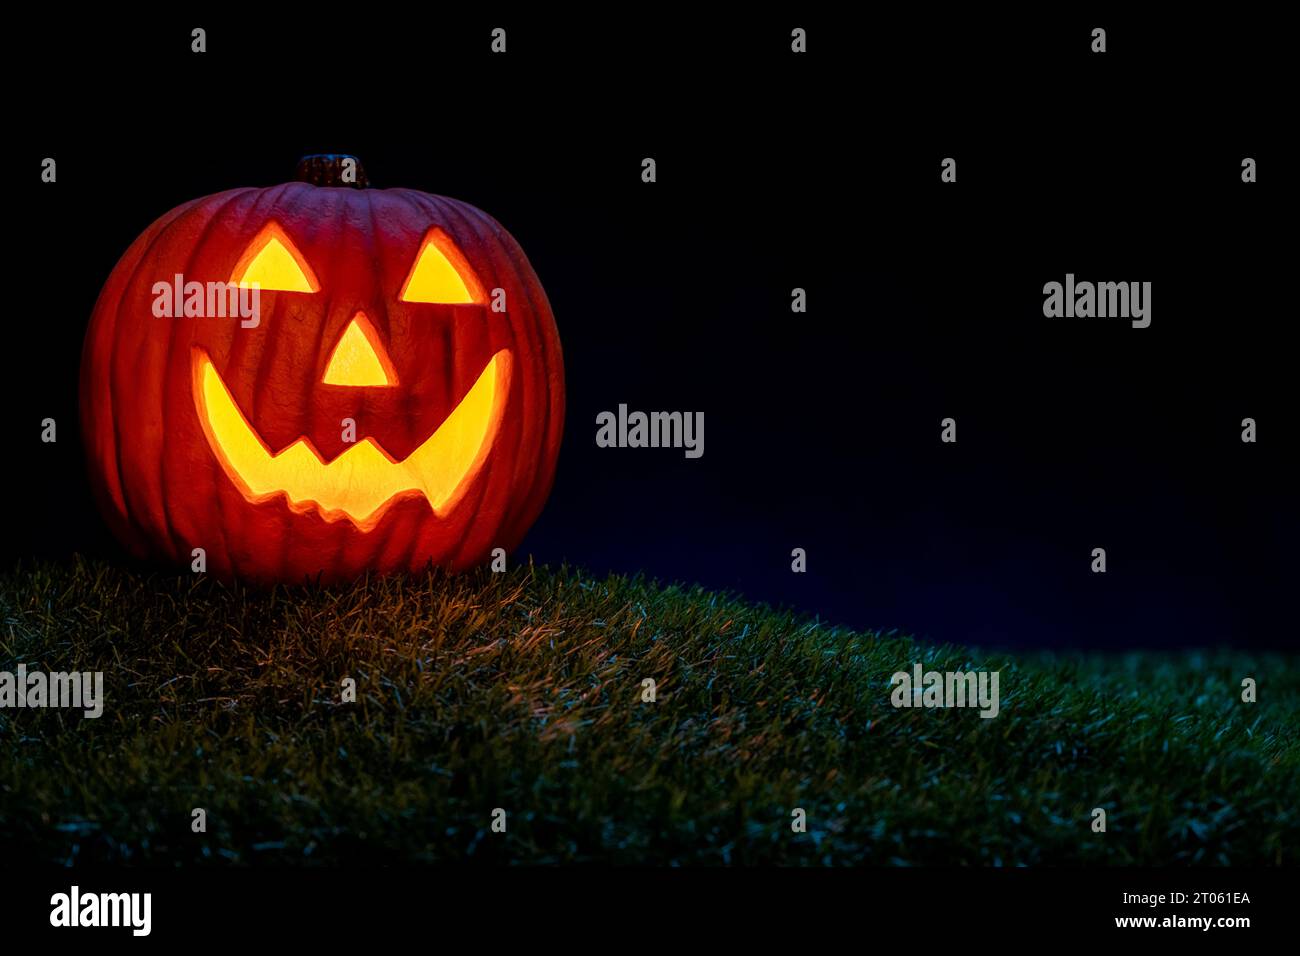 Un sorridente Jack o Lanterna seduto nell'erba come decorazione di Halloween. Si illumina dalla luce interna ed è accentuata dalla luce blu della luna. Foto Stock